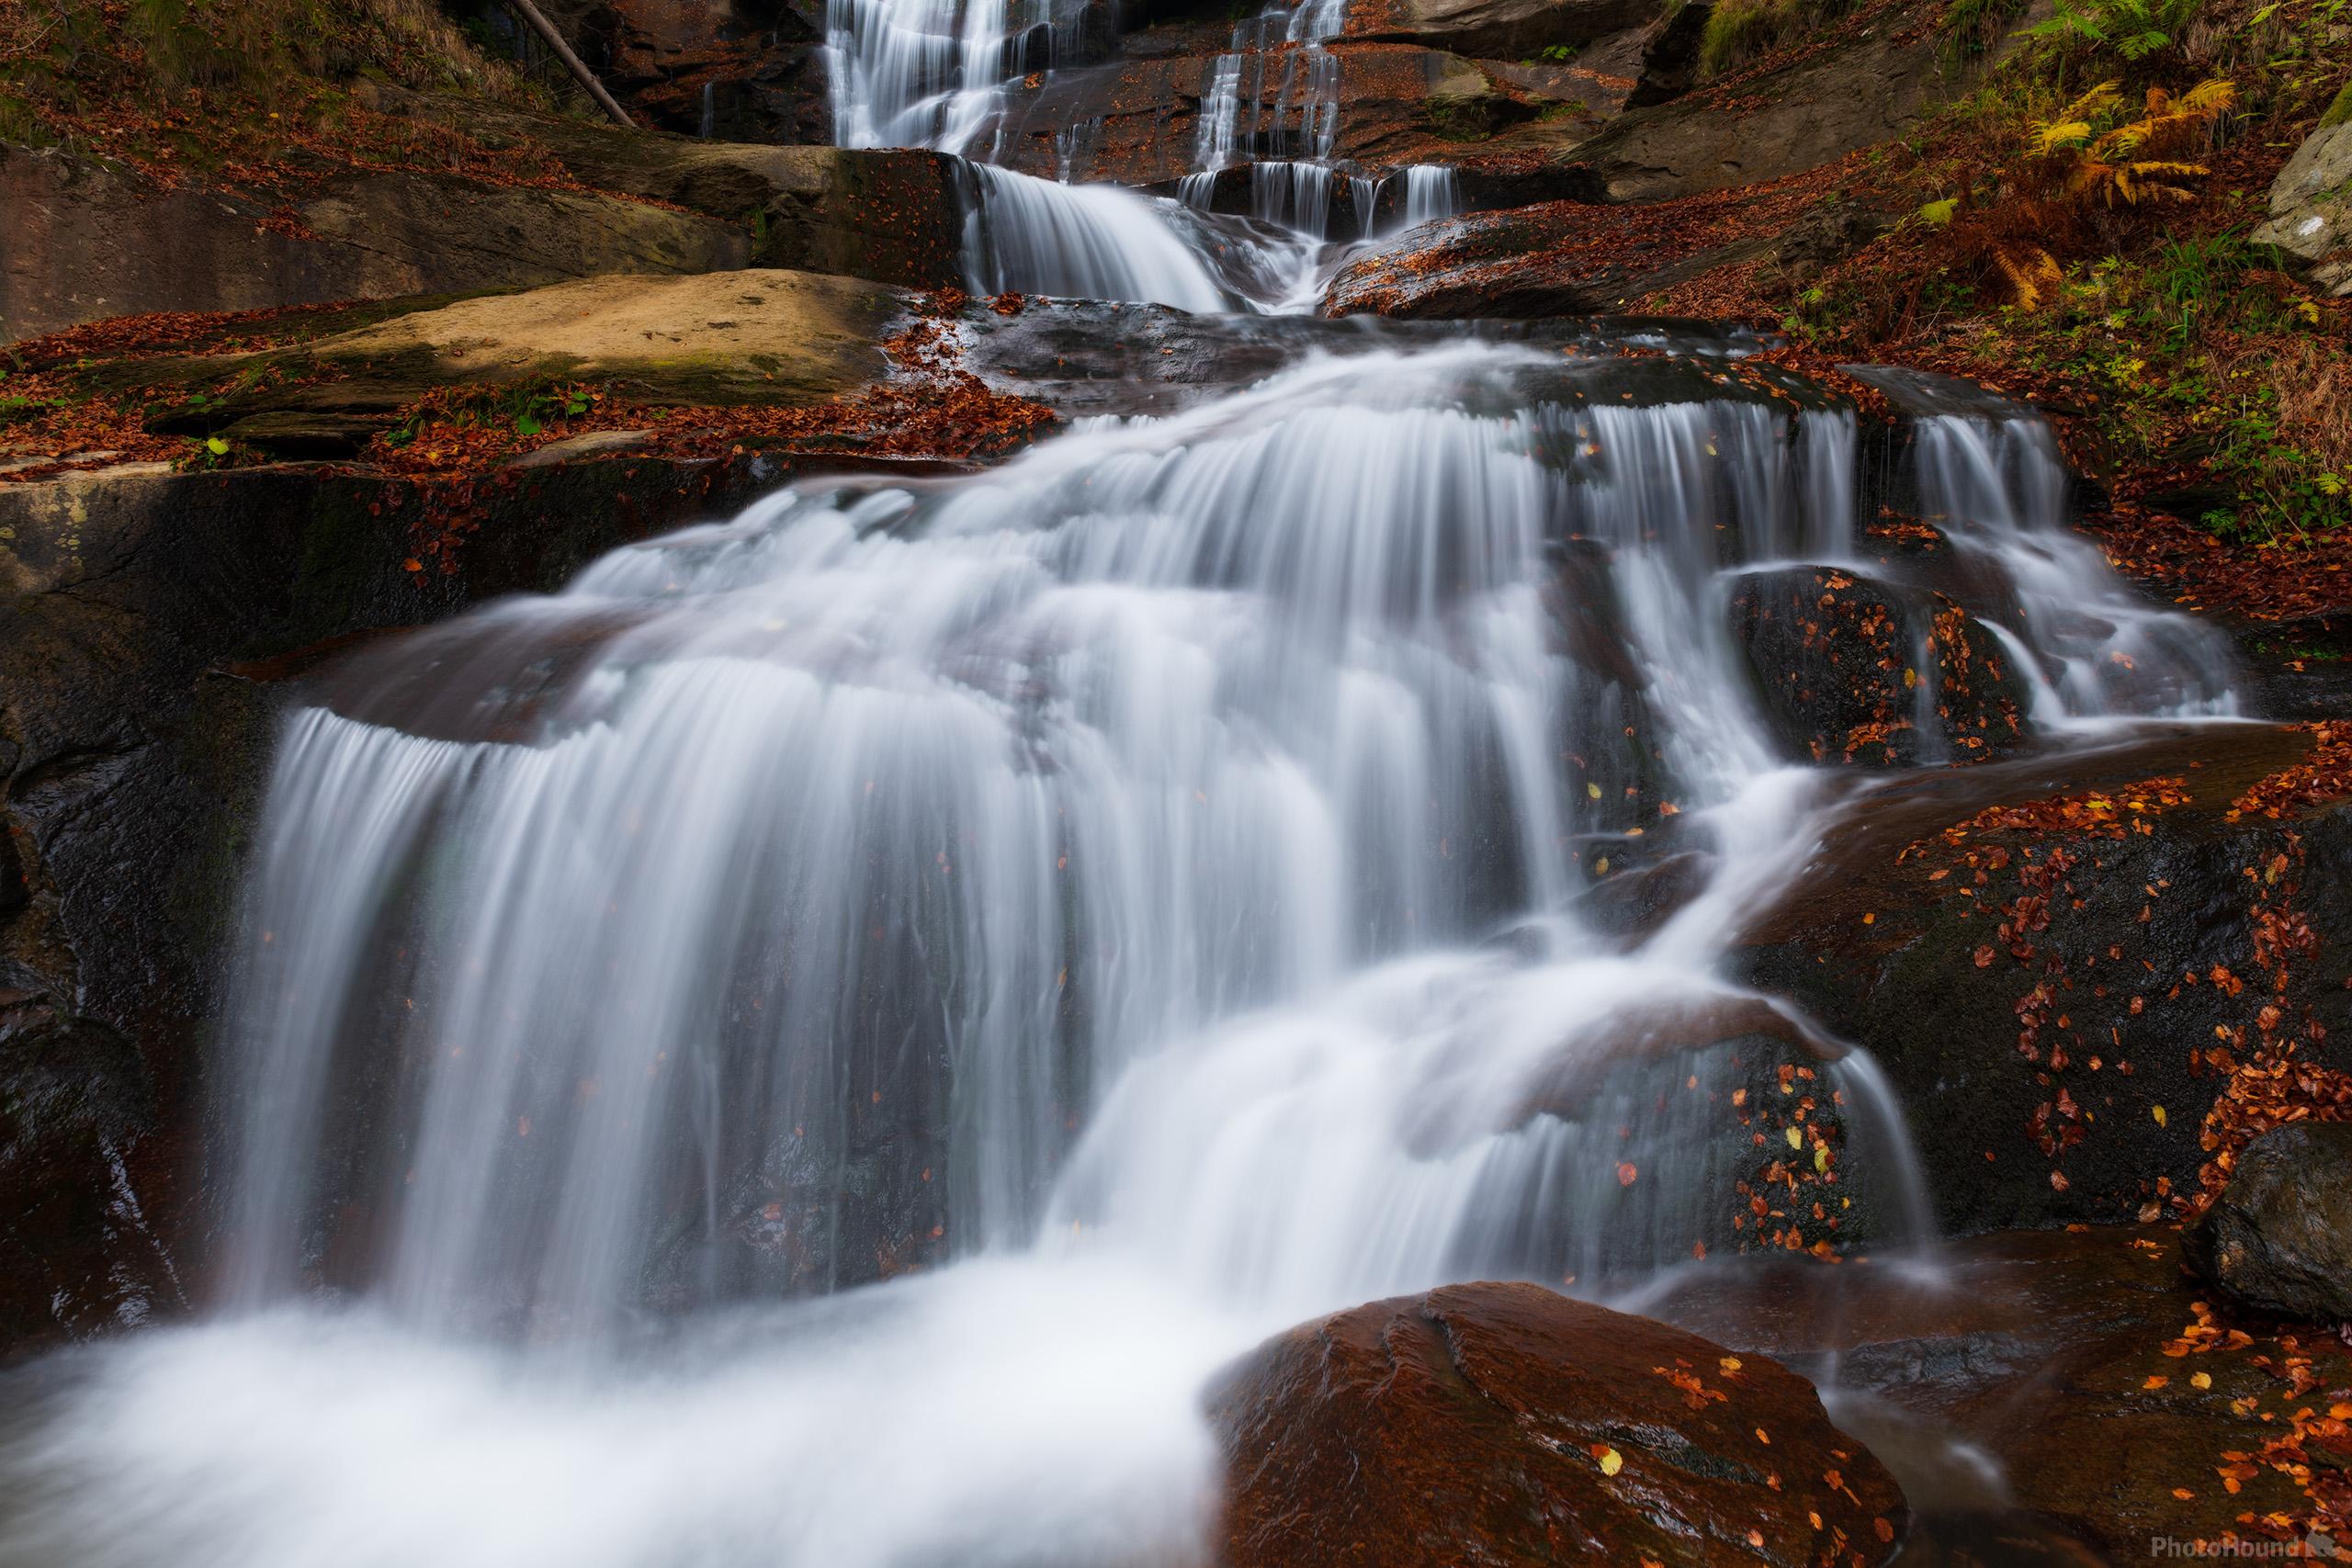 Image of Kozica Waterfalls by Luka Esenko